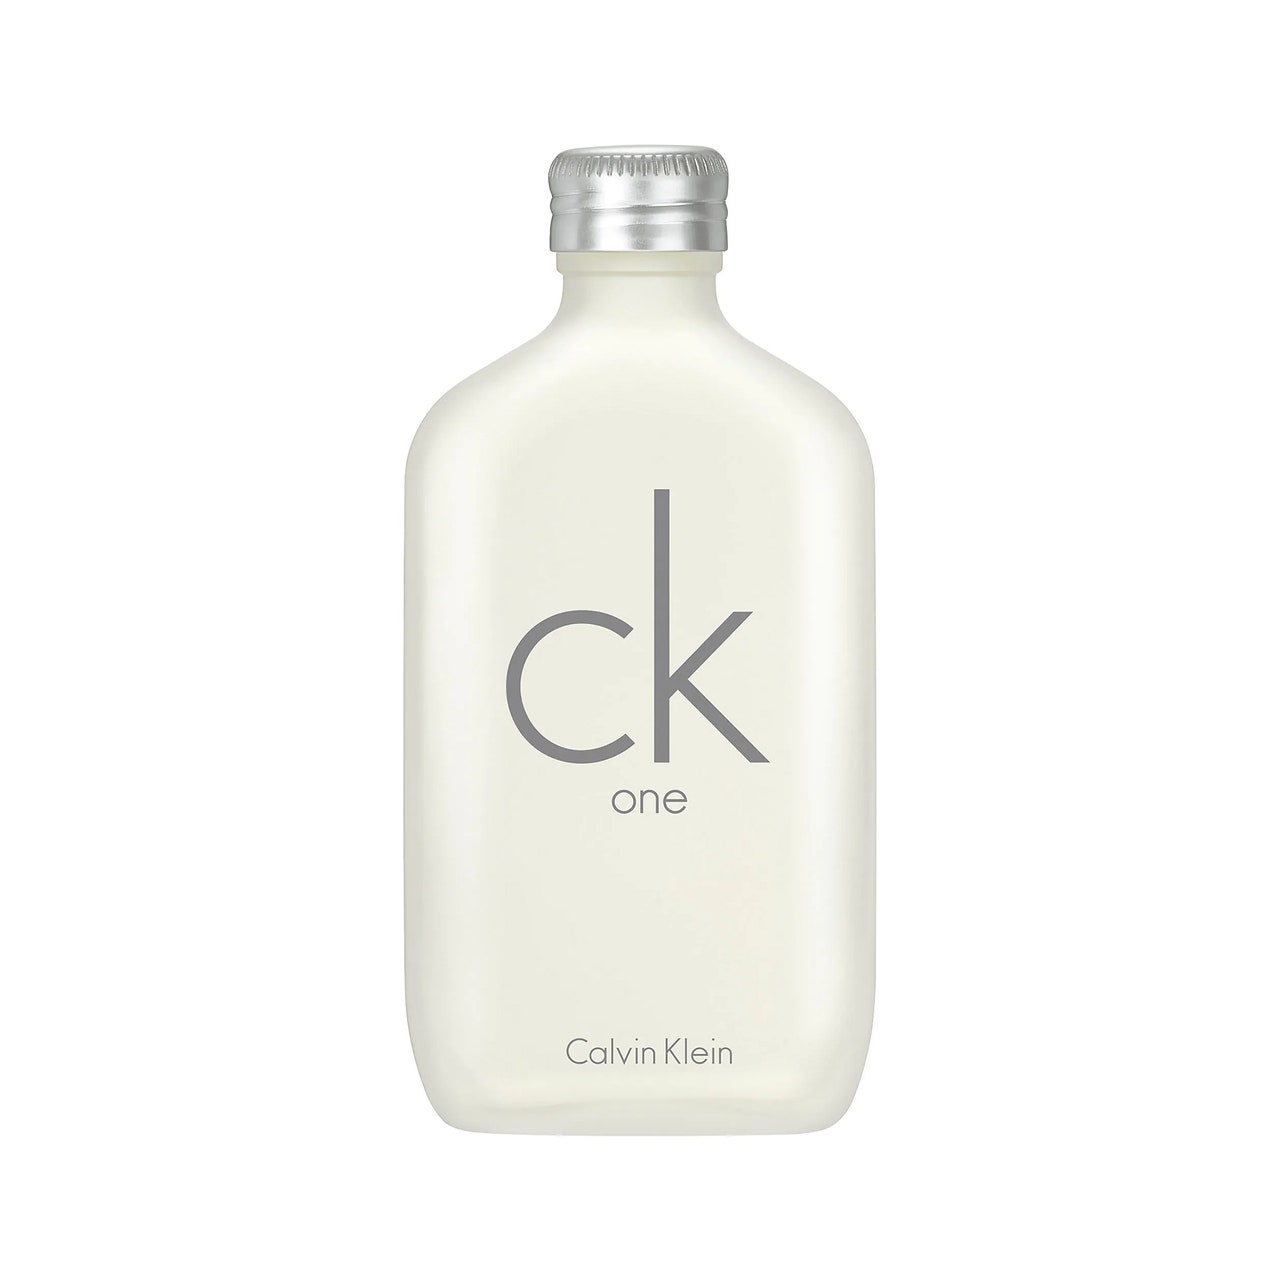 Calvin Klein CK One cremefarbene Flasche mit silbernem Verschluss auf weißem Hintergrund